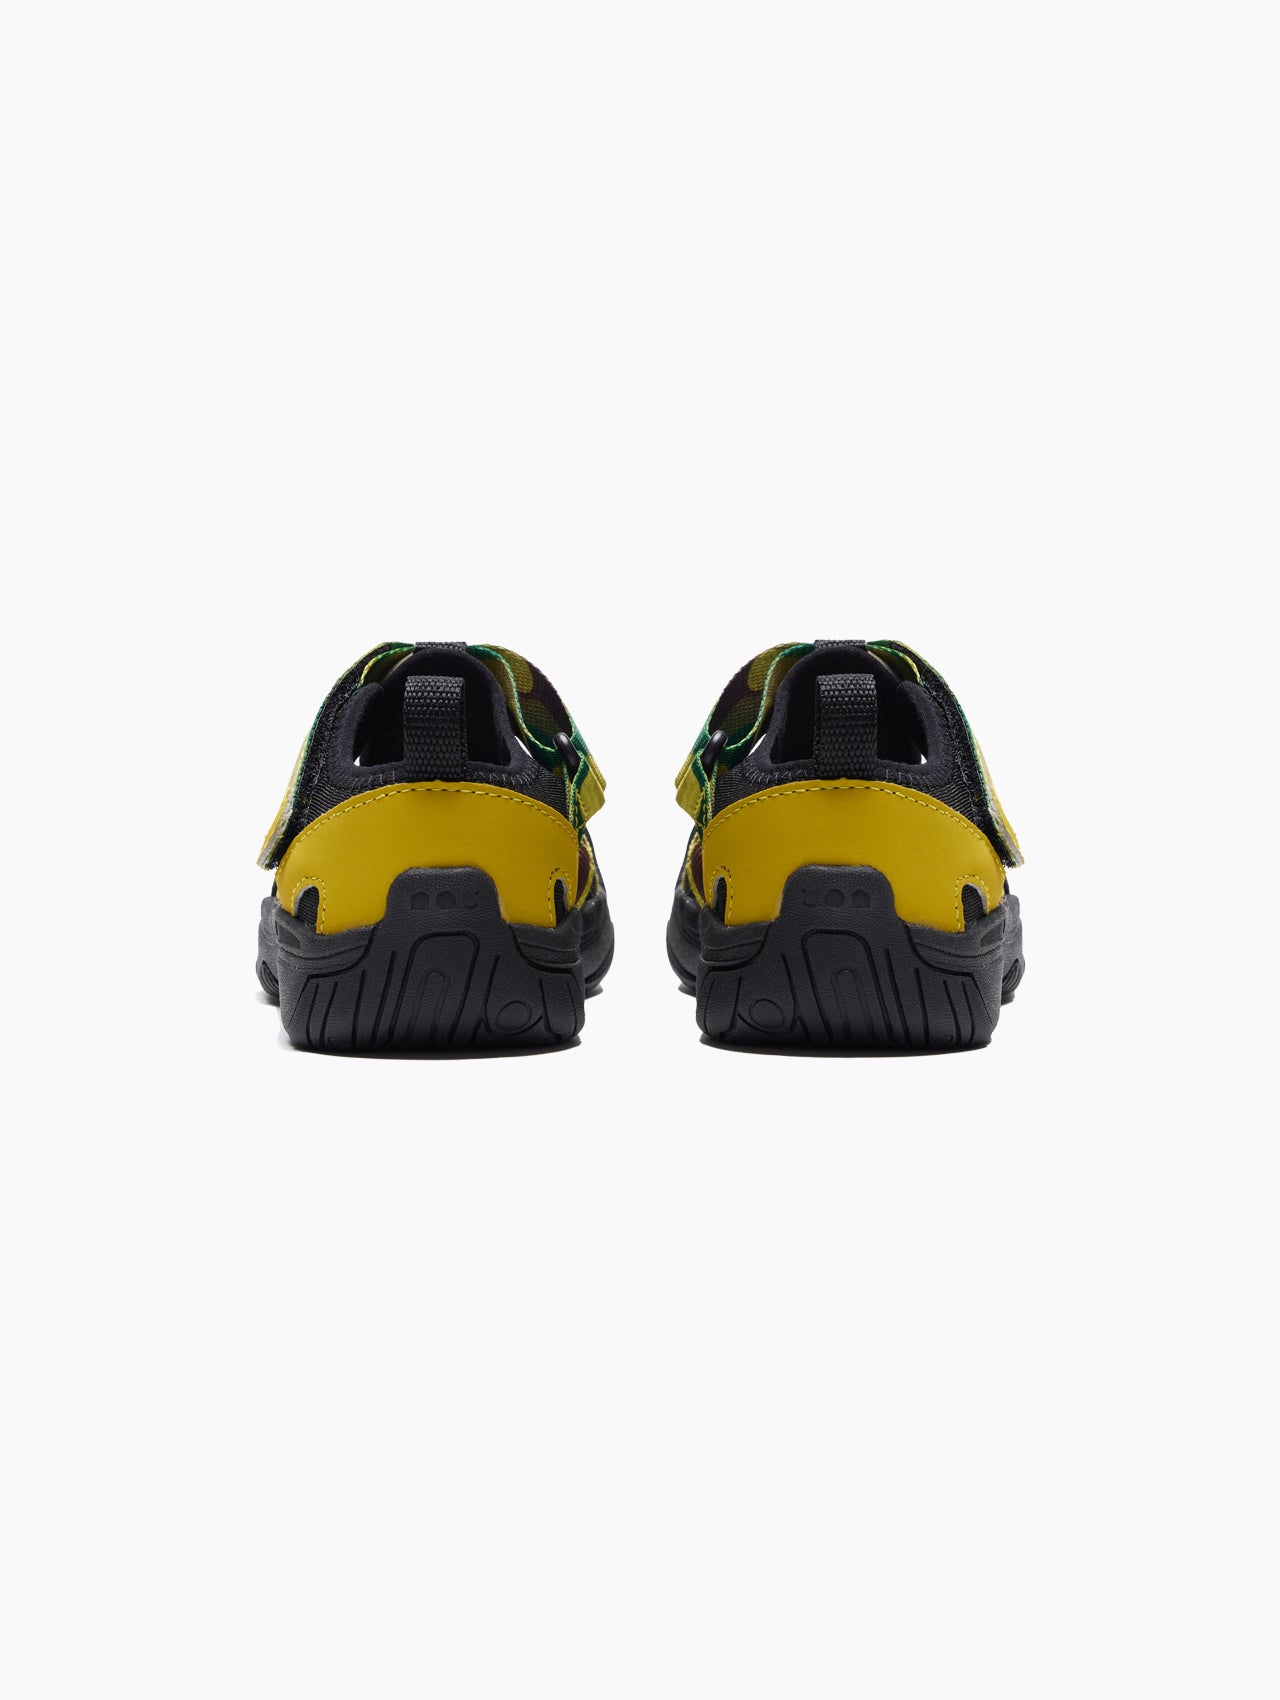 Adjustable Water Sandals